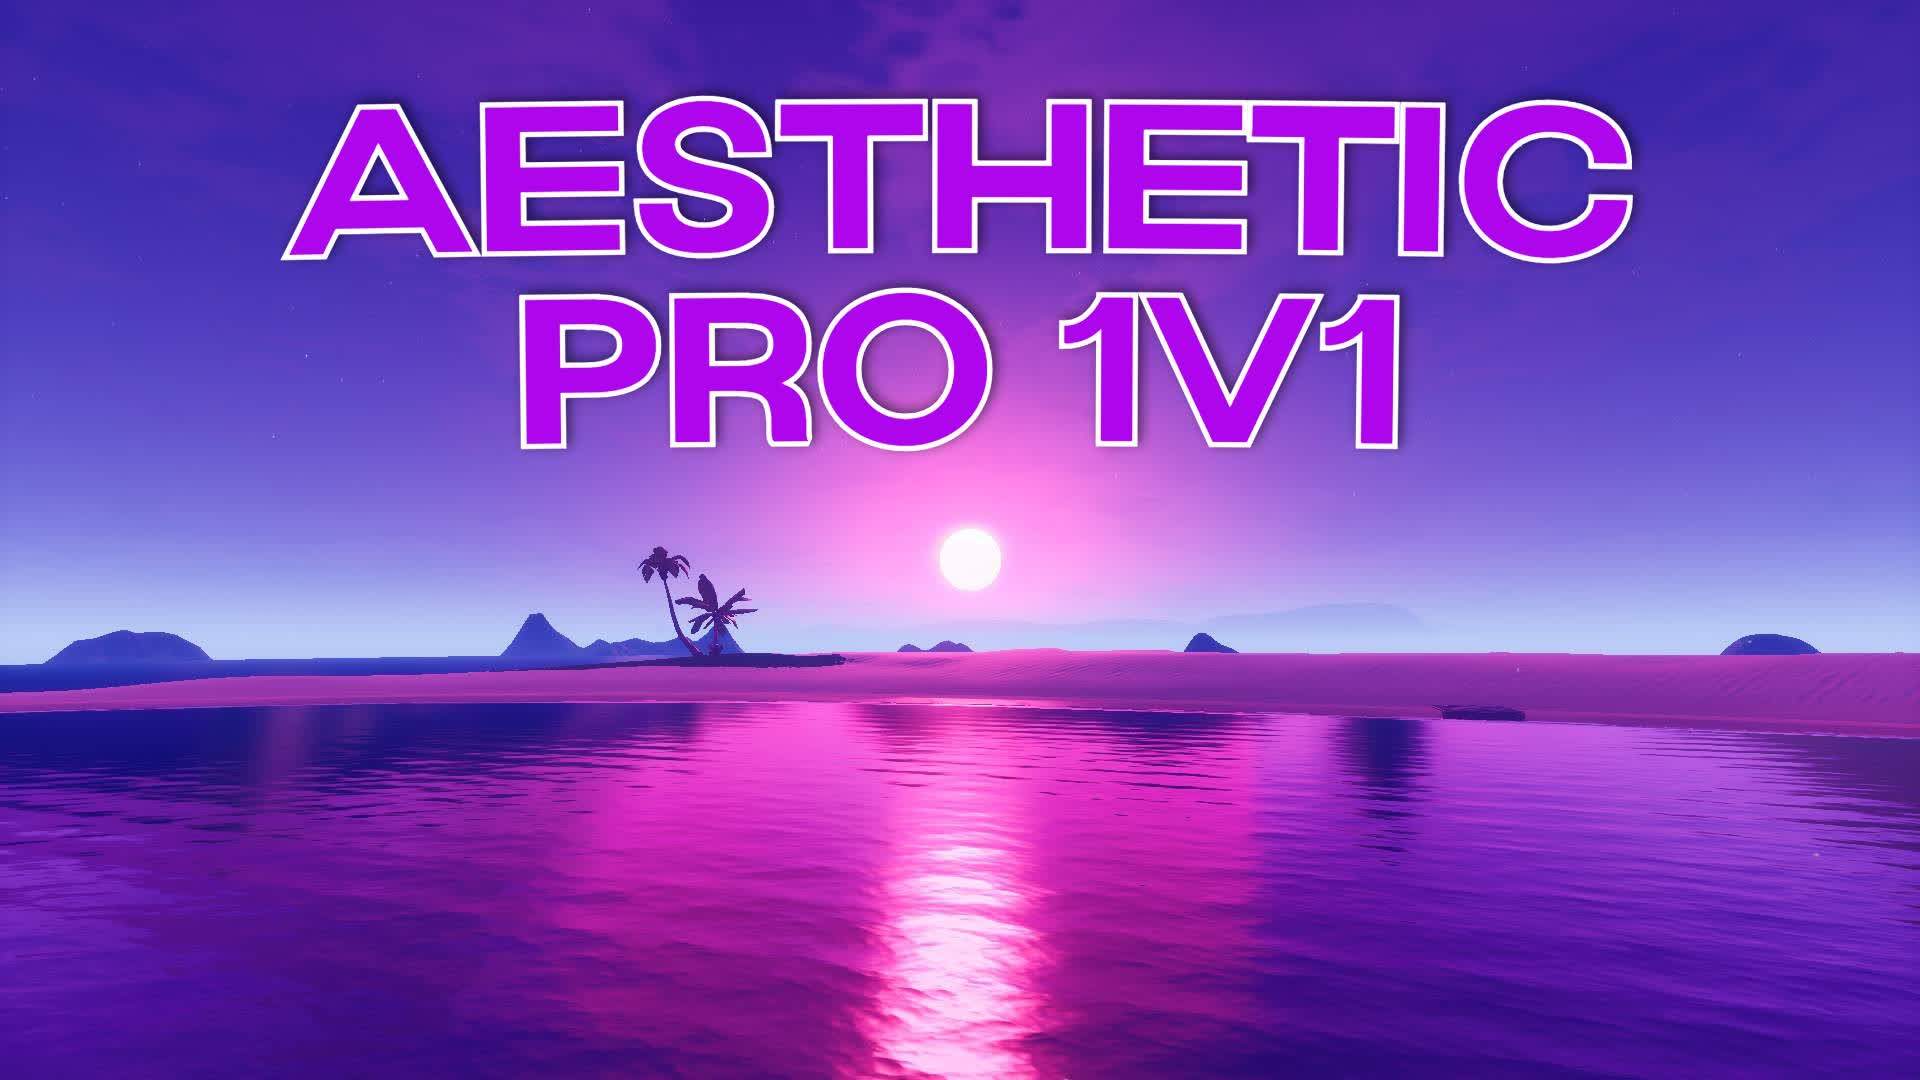 Aesthetic Pro 1v1